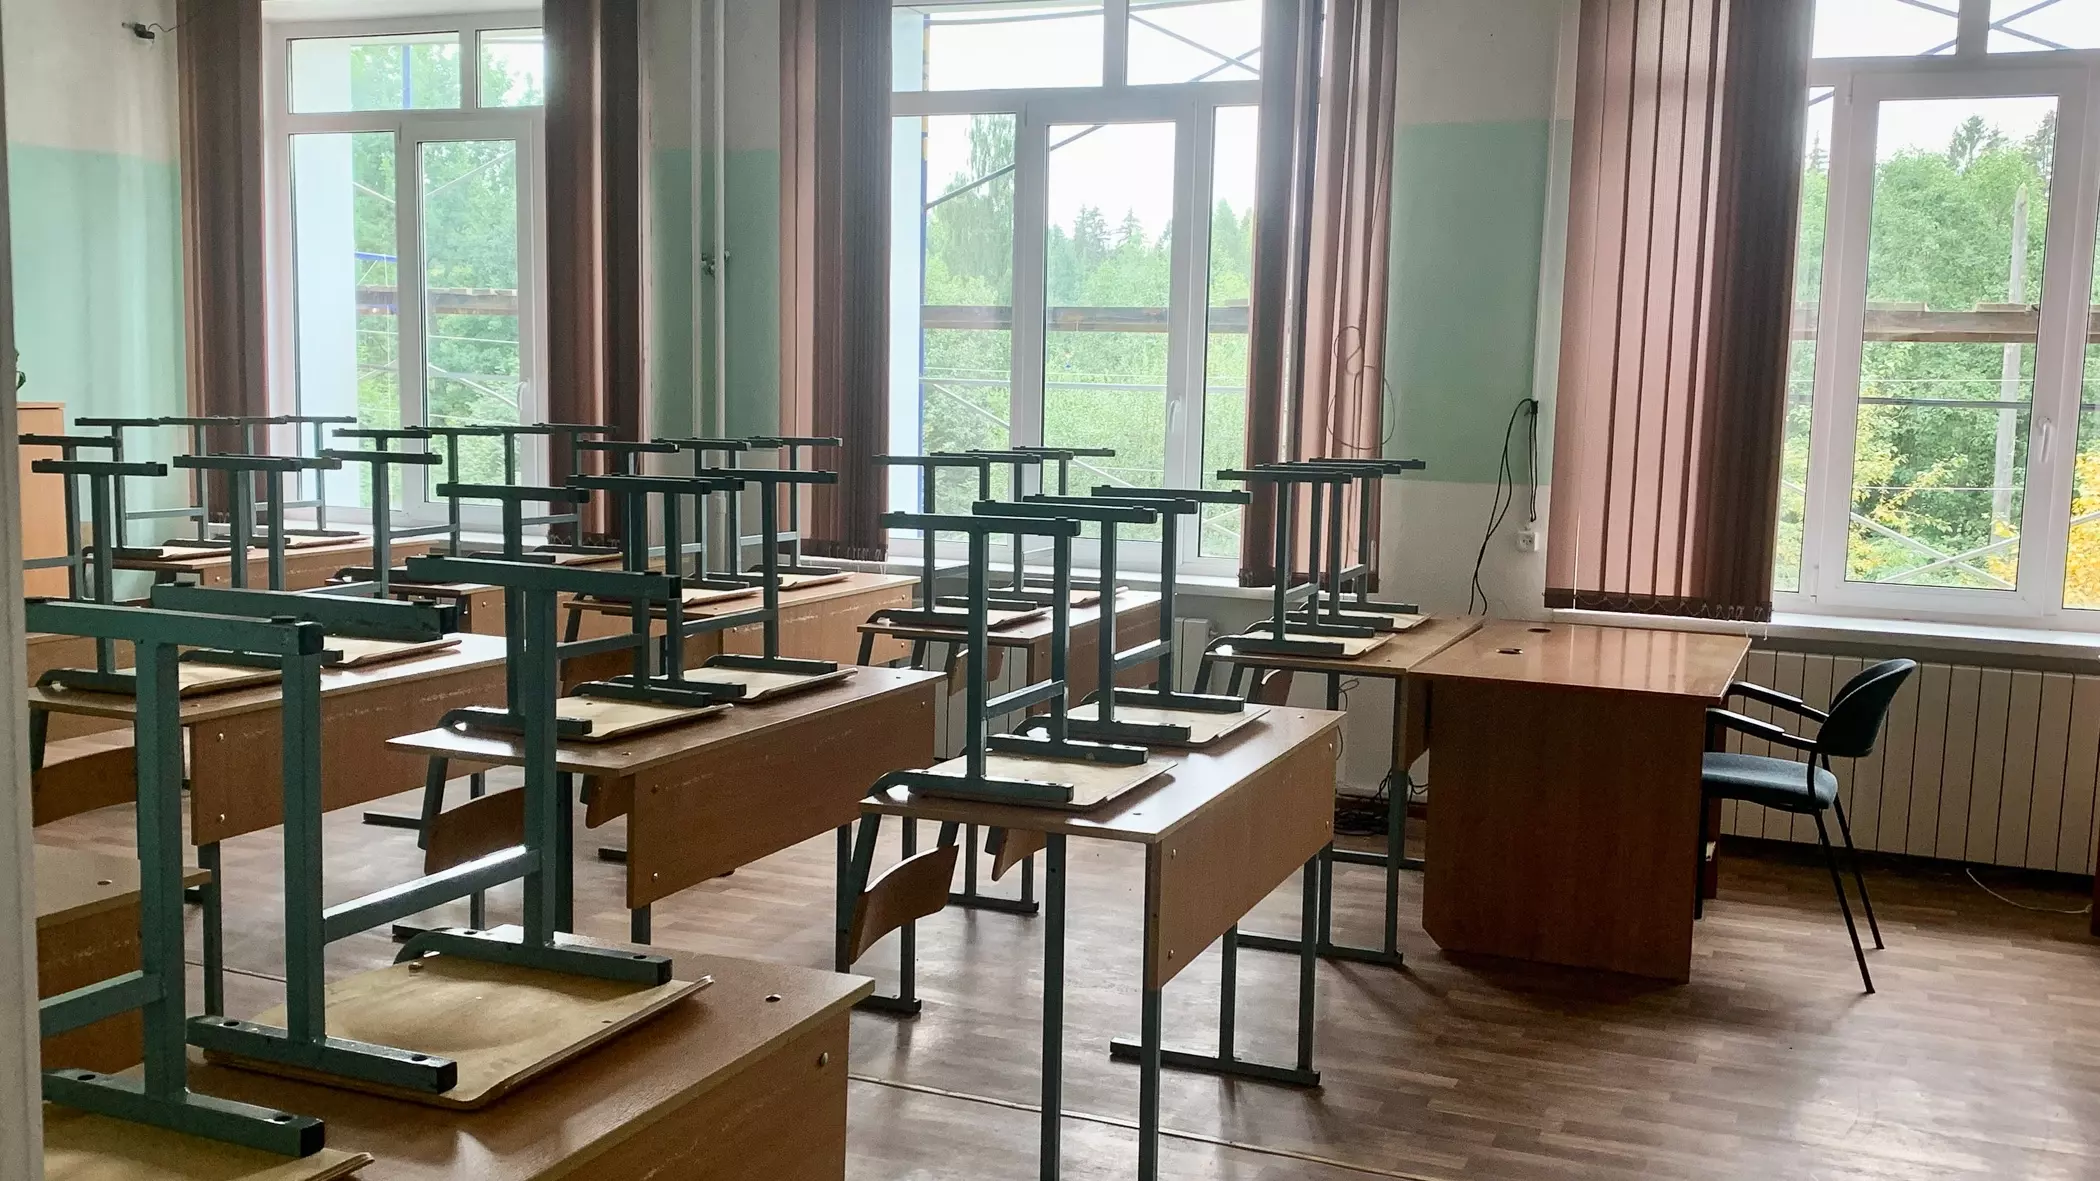 Застройщик из Барнаула построит и подарит школу Новосибирску